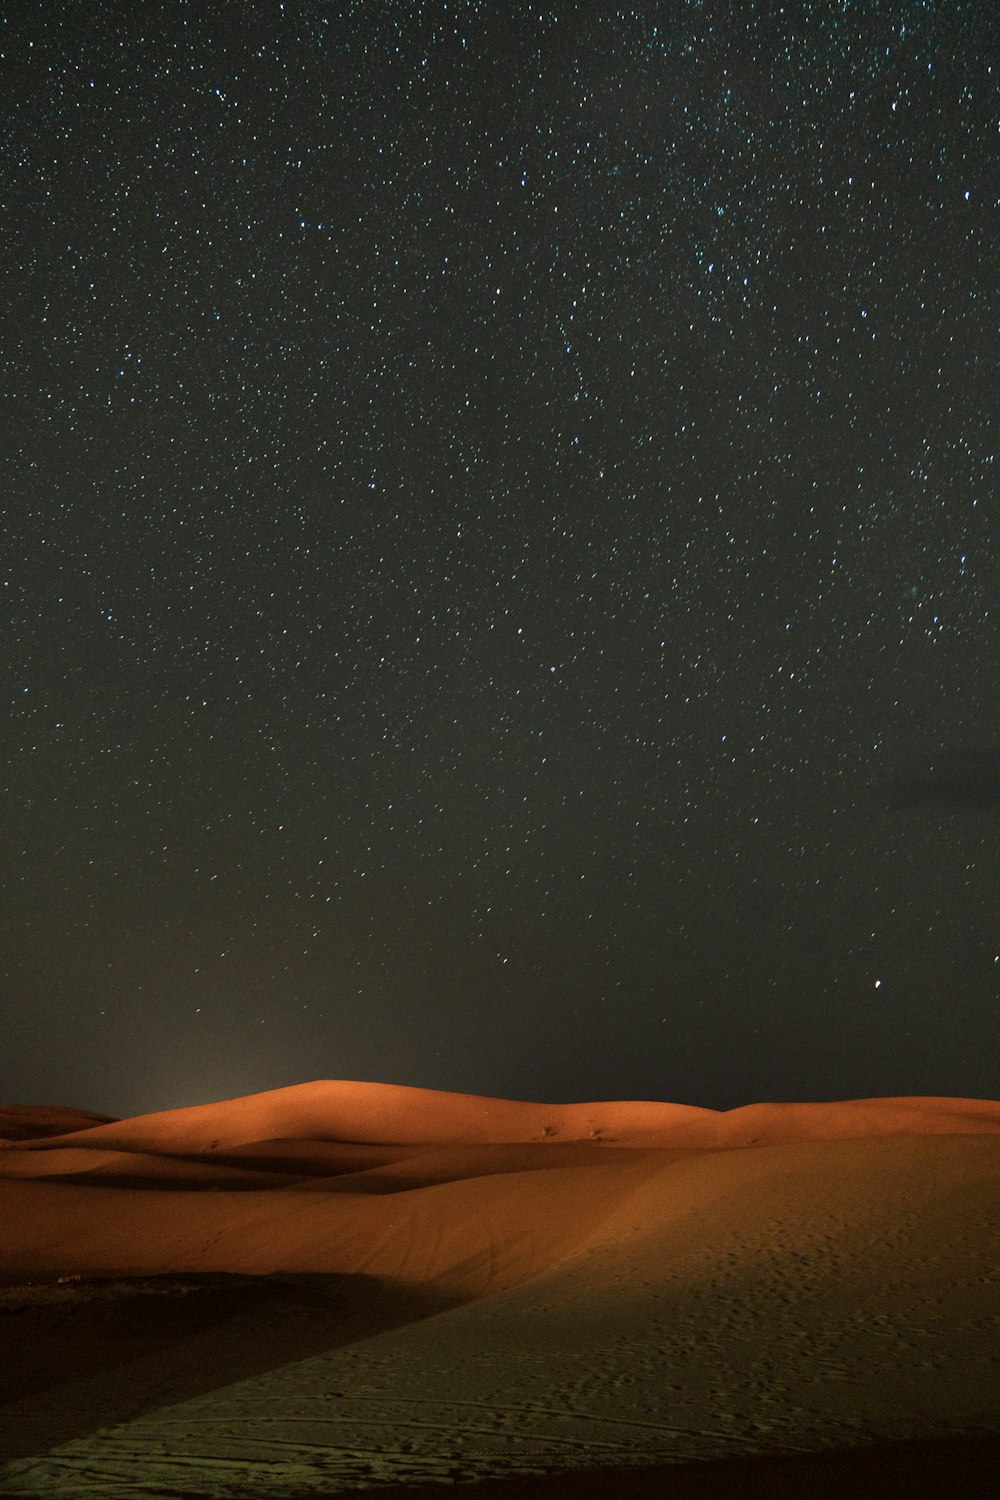 Sterne am Himmel, Blick auf die Wüste